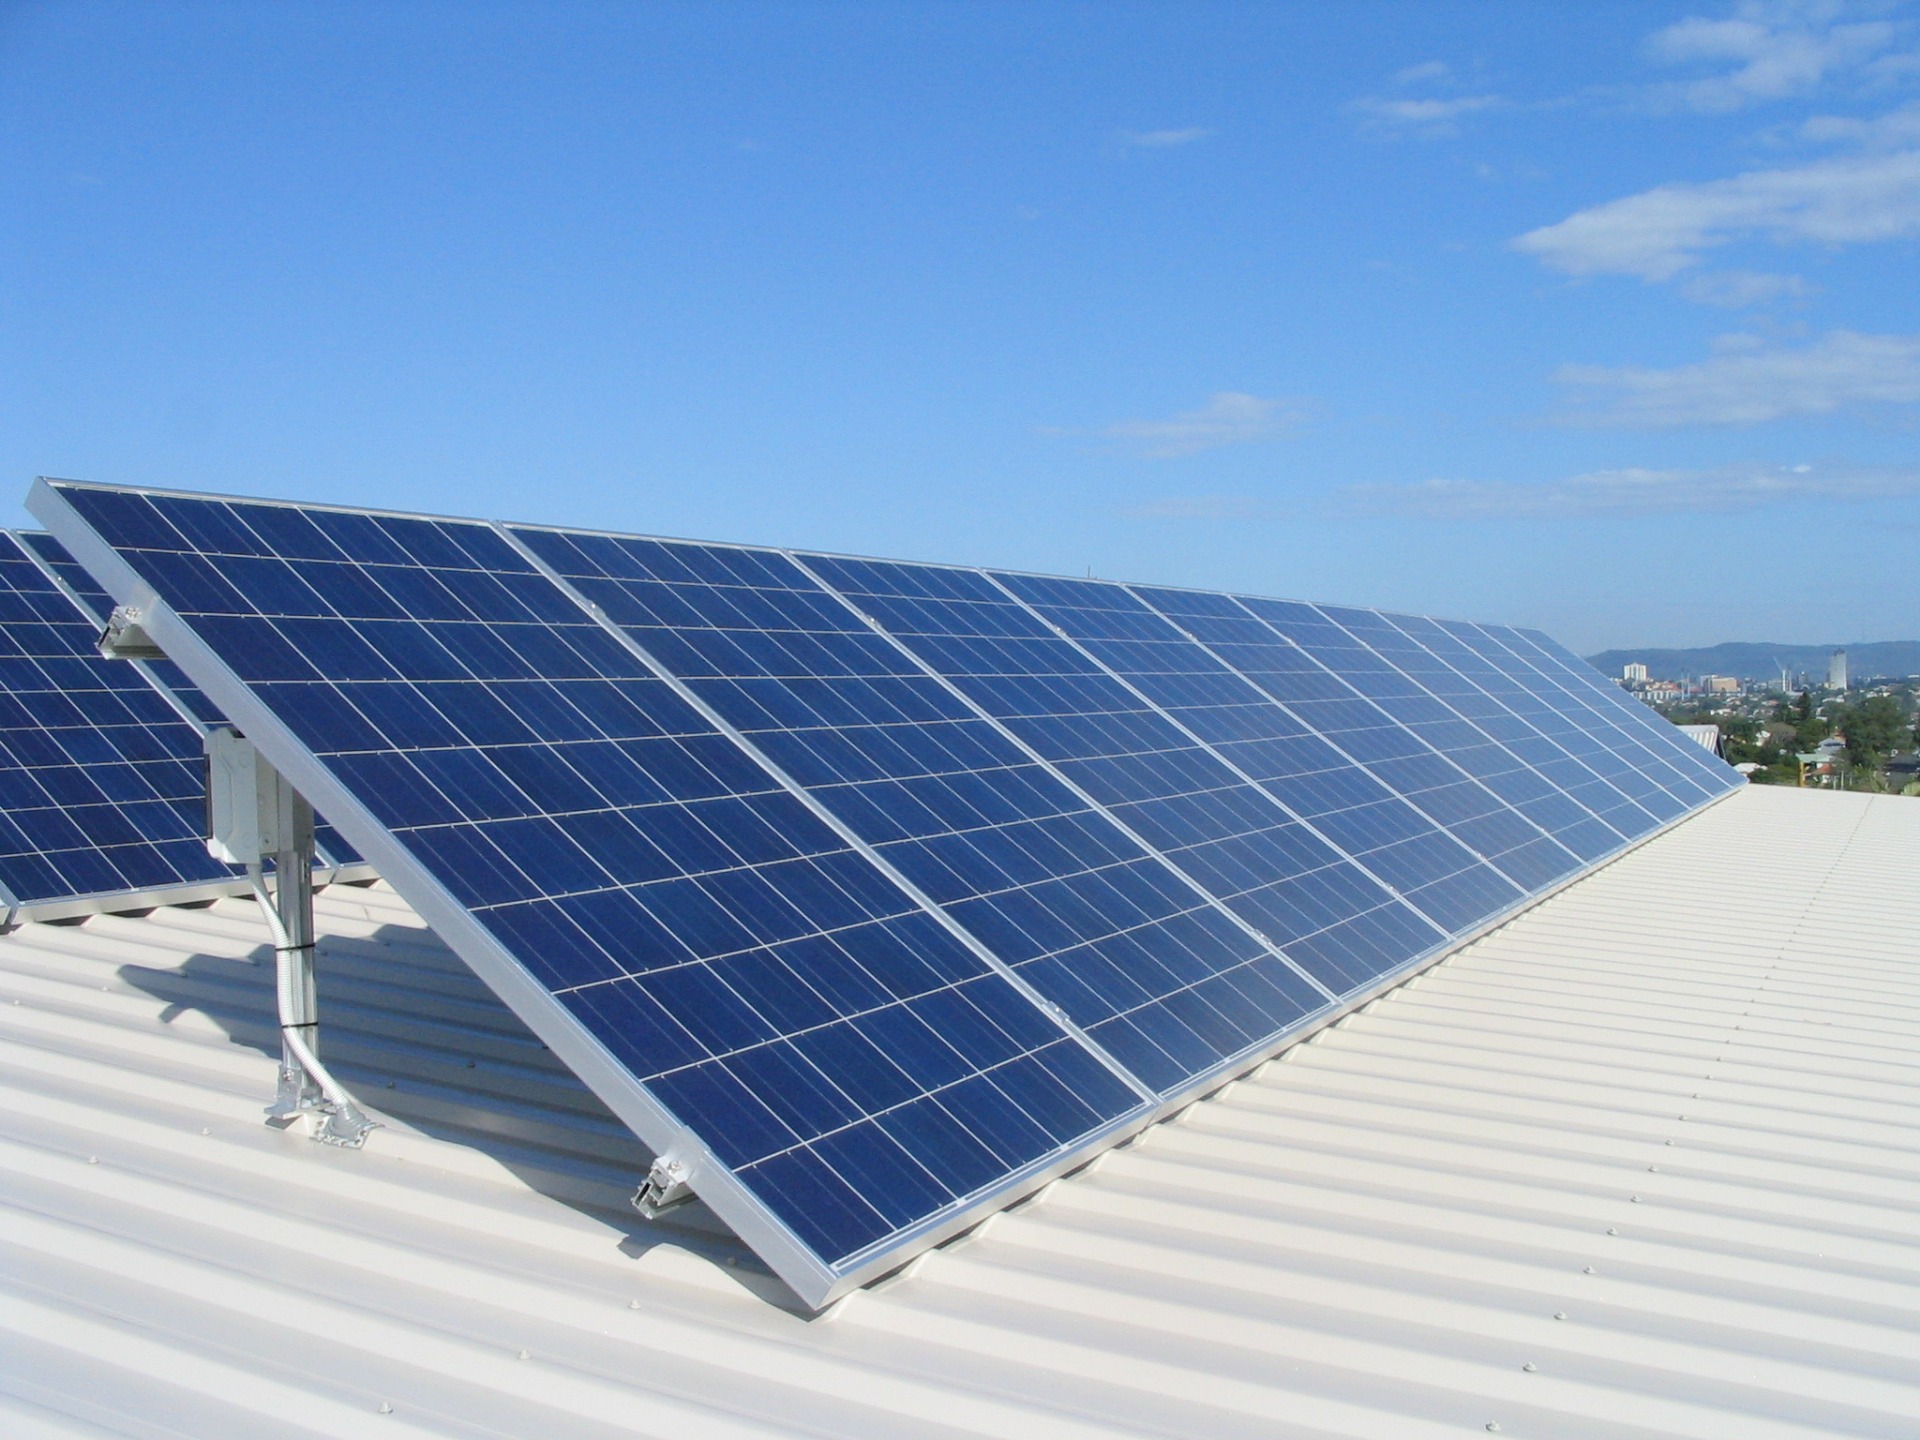 Предложен метод повышения эффективности солнечных батарей и светодиодов при использовании углеродных точек